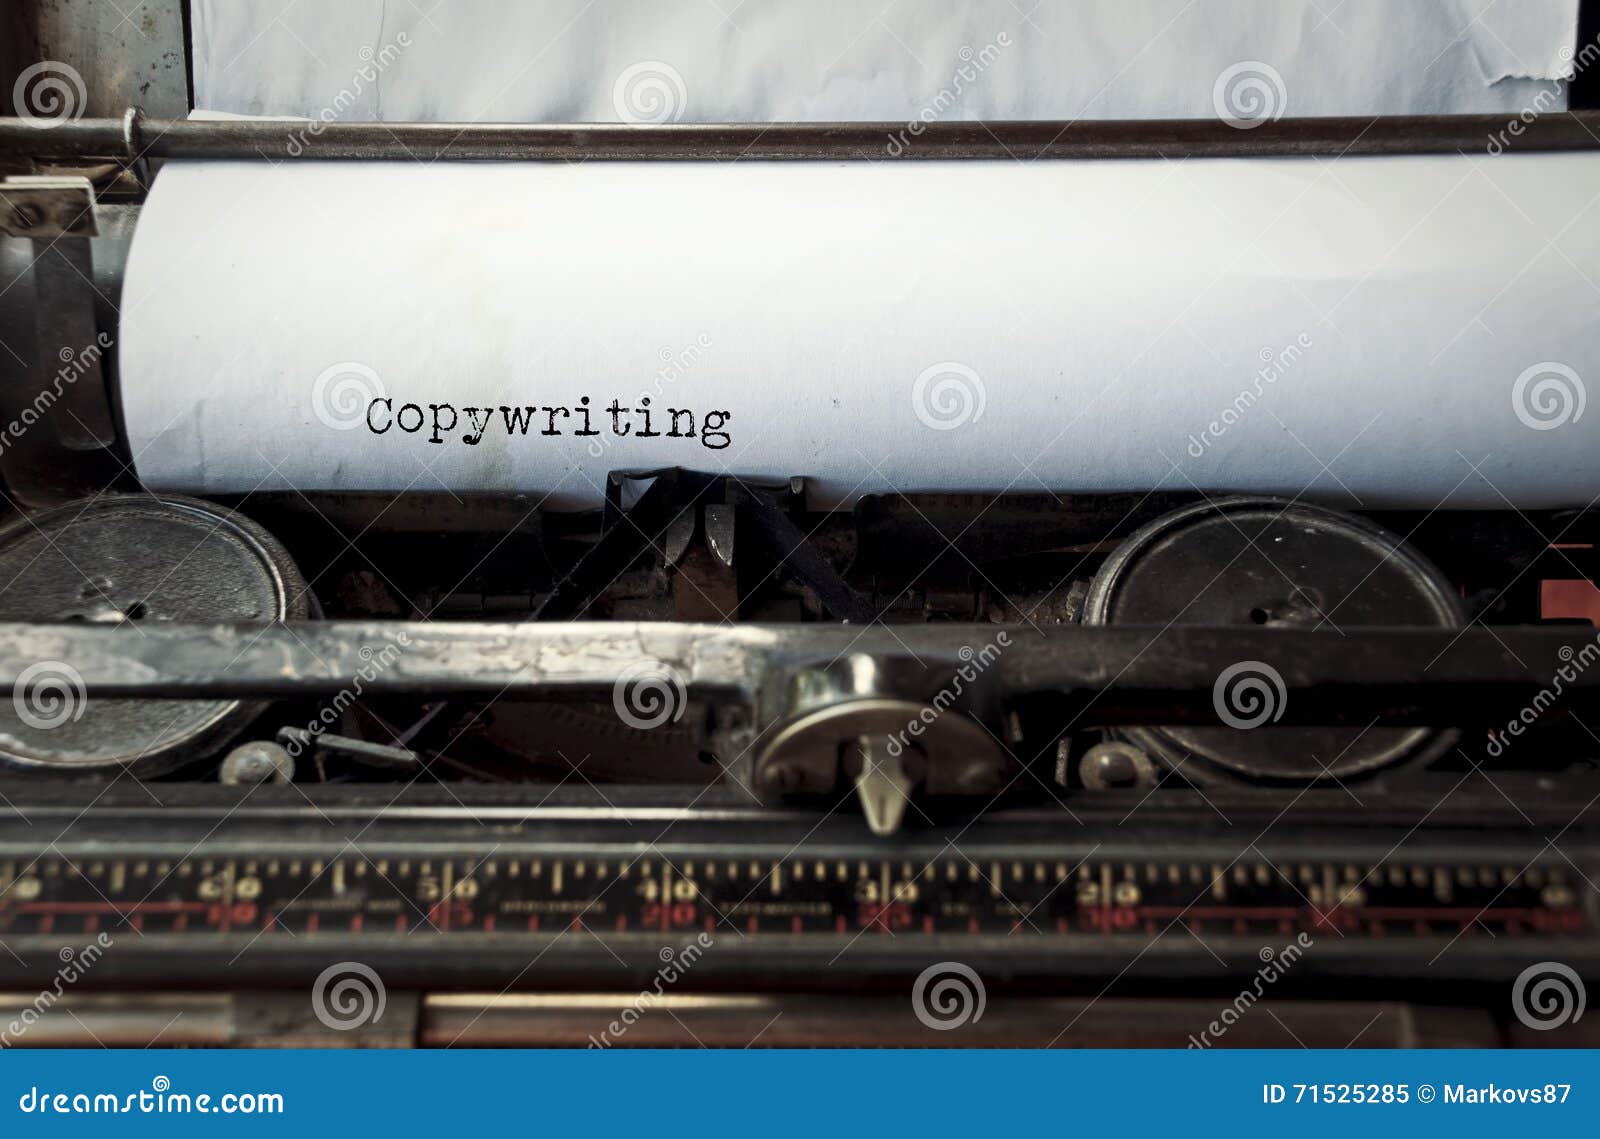 copywriting typed on an old typewriter